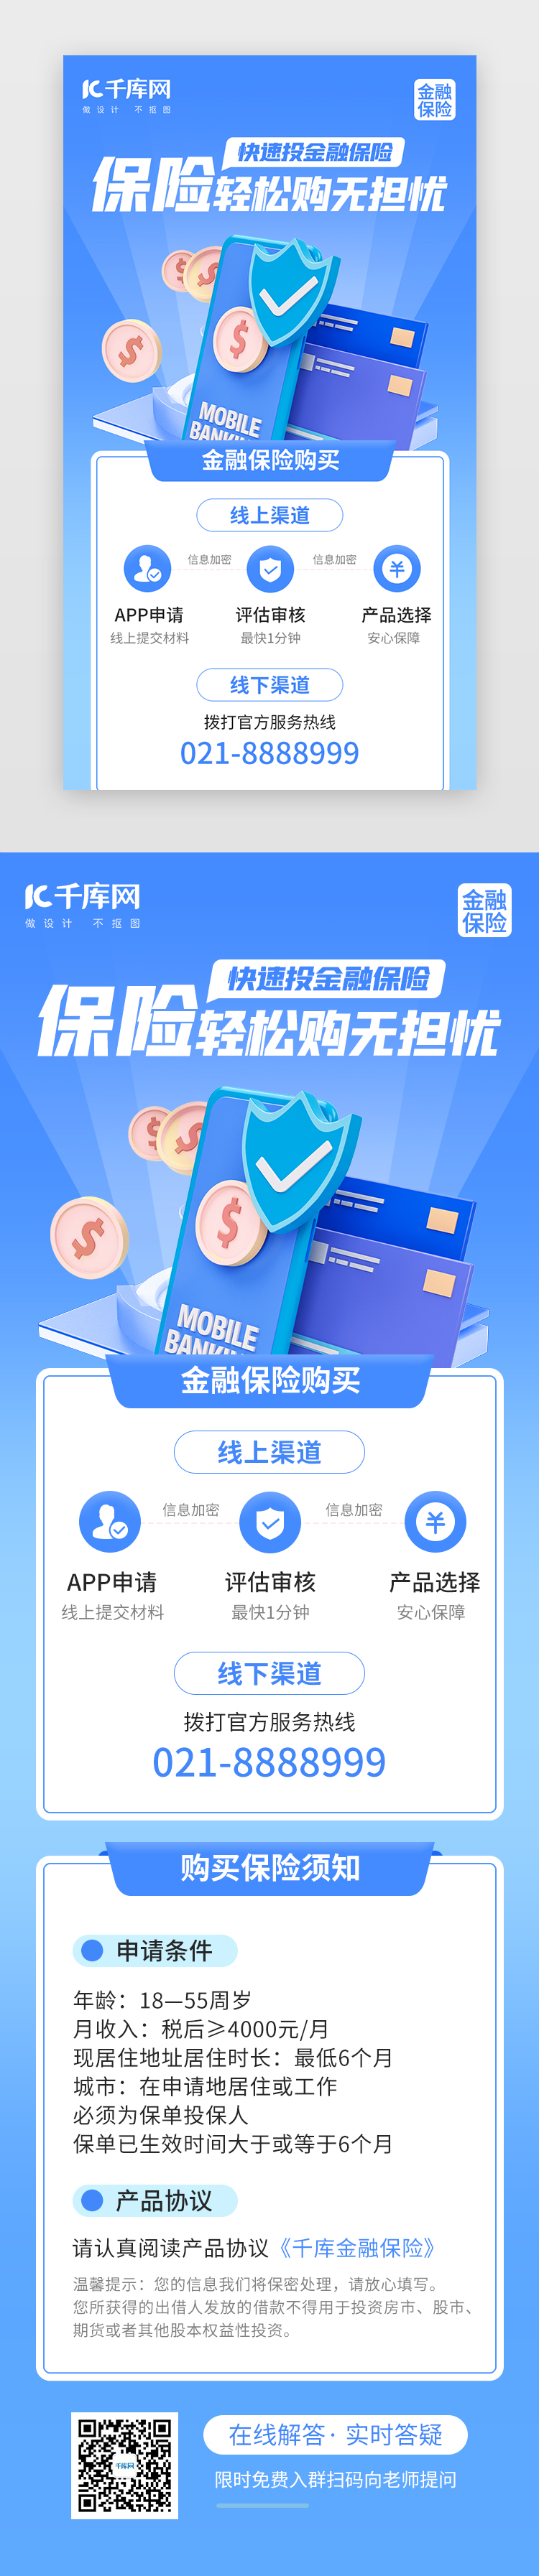 金融保险购买无忧H5创意蓝色手机金融图片